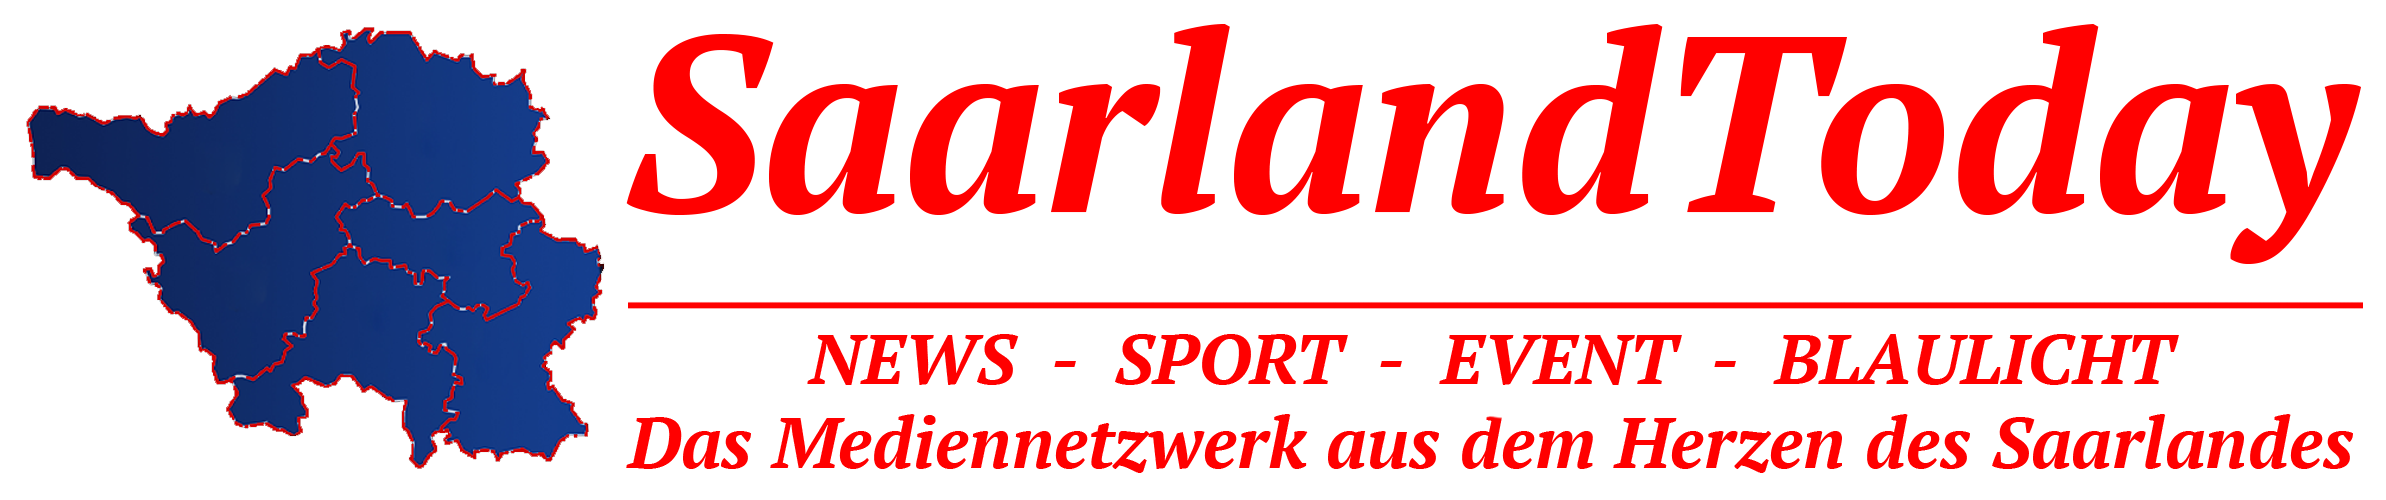 SaarlandToday - NEWS